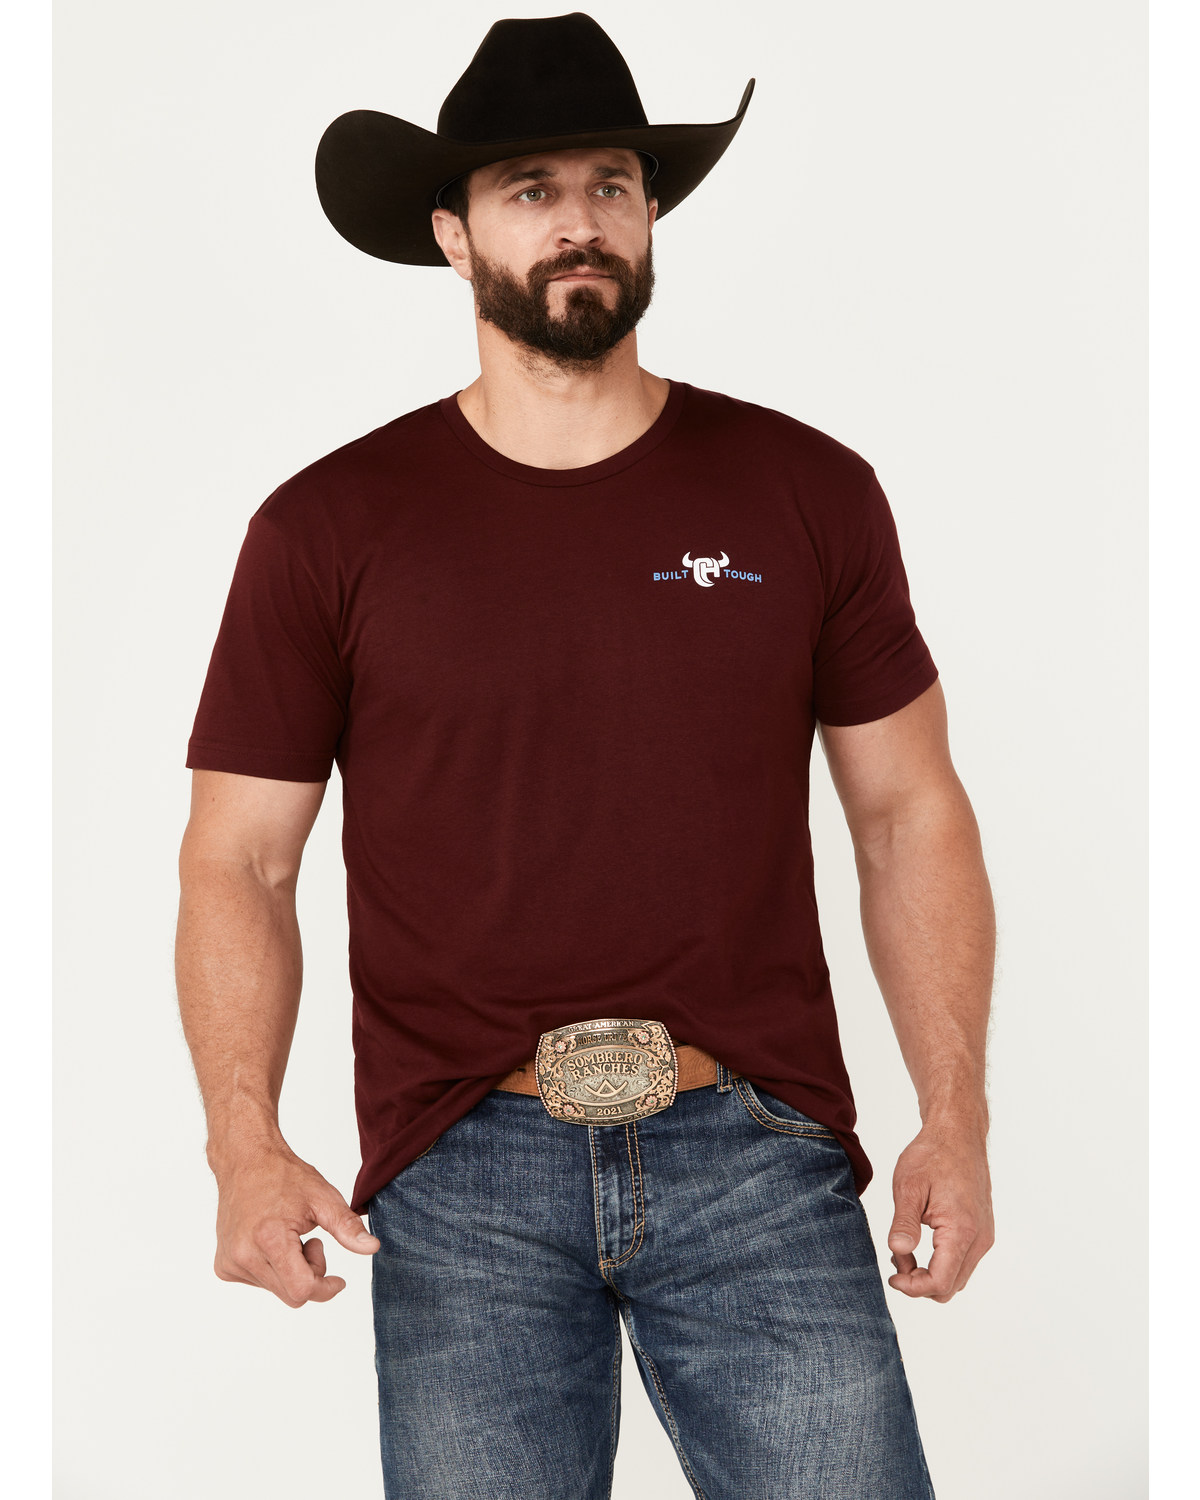 Cowboy Hardware Men's Built Tough Shield Short Sleeve Graphic T-Shirt